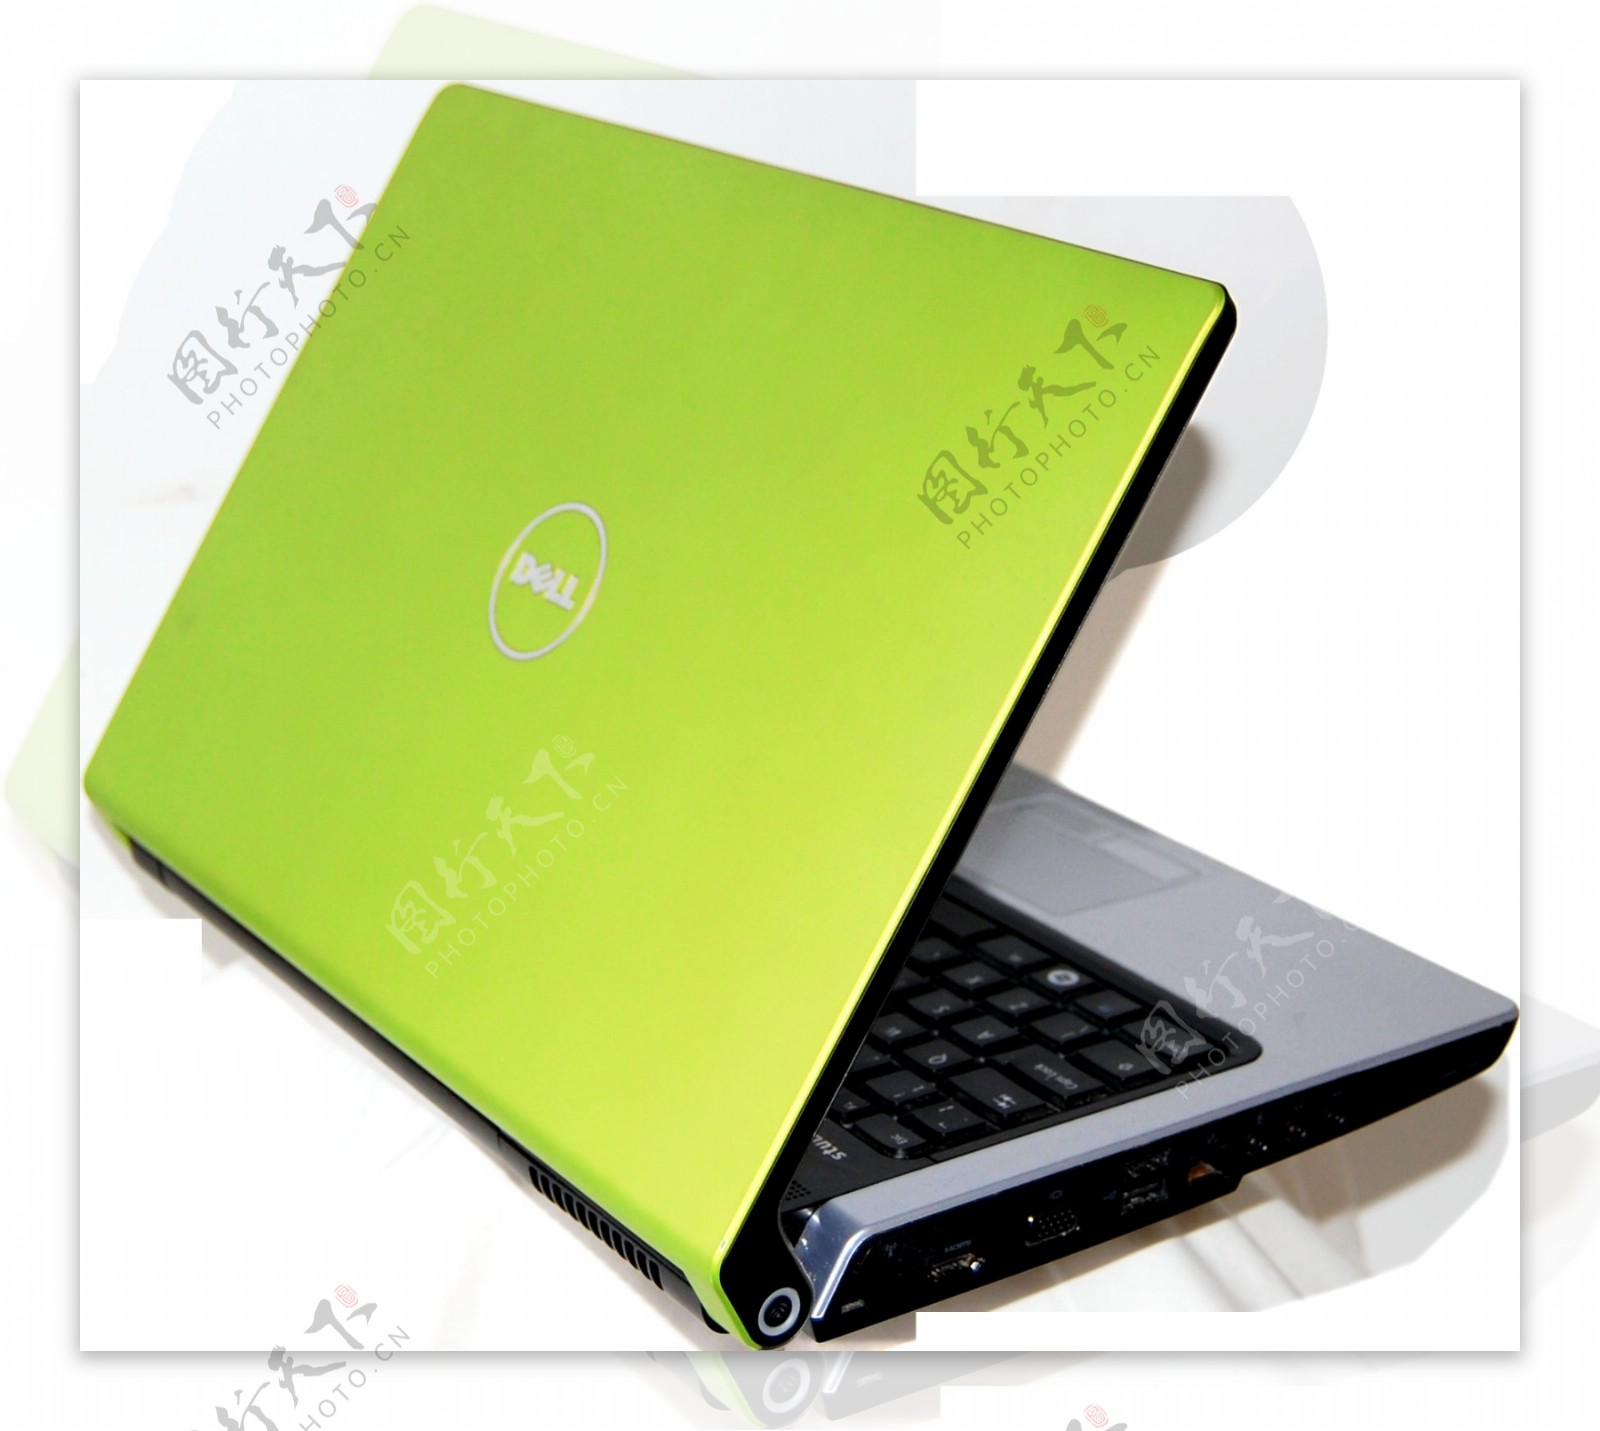 绿色笔记本电脑免抠png透明图层素材